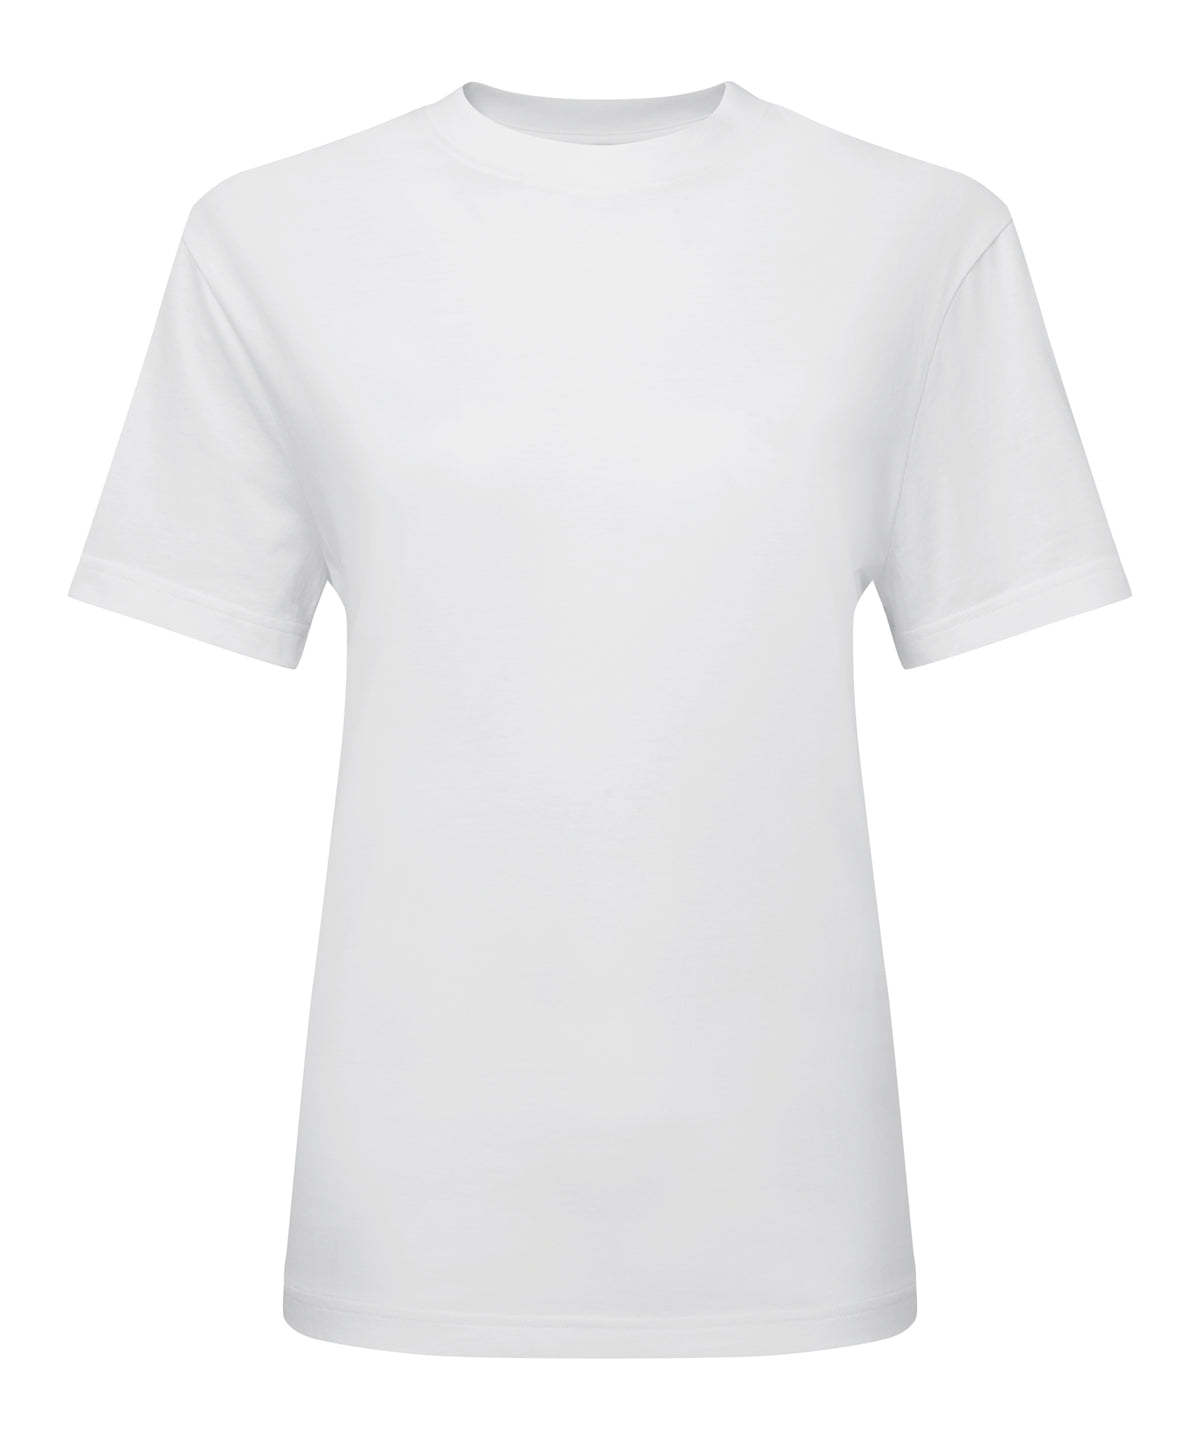 Stuttermabolir - Women’s TriDri® Organic Boxy Oversized T-shirt